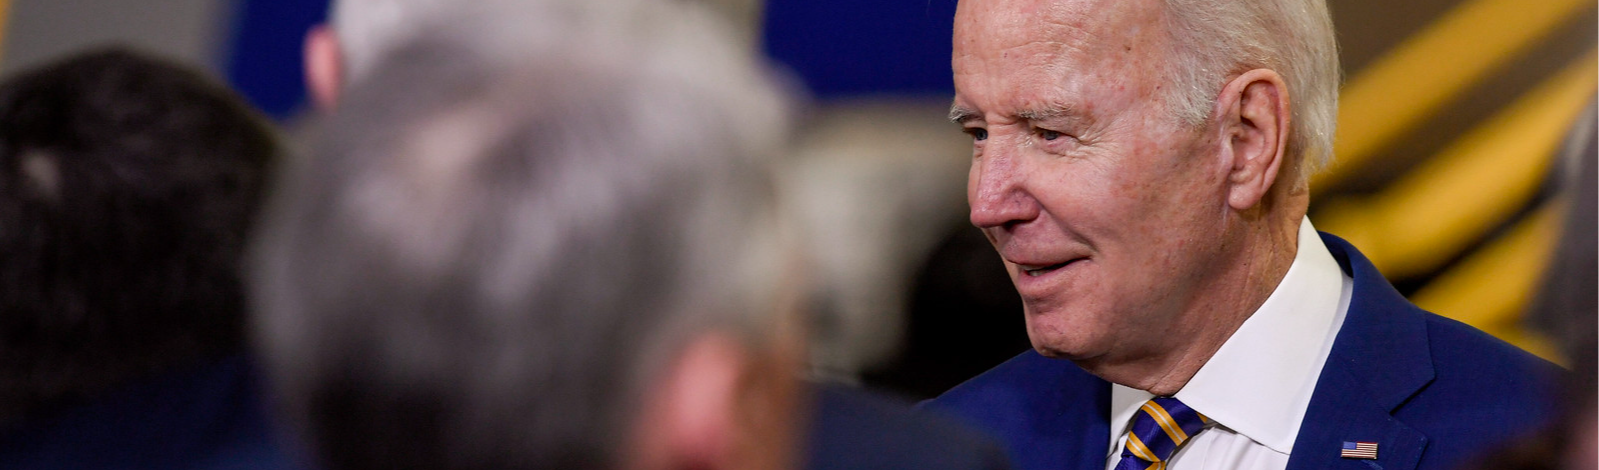 Promotor livra Biden de acusação criminal, mas questiona saúde mental: "memória pobre"